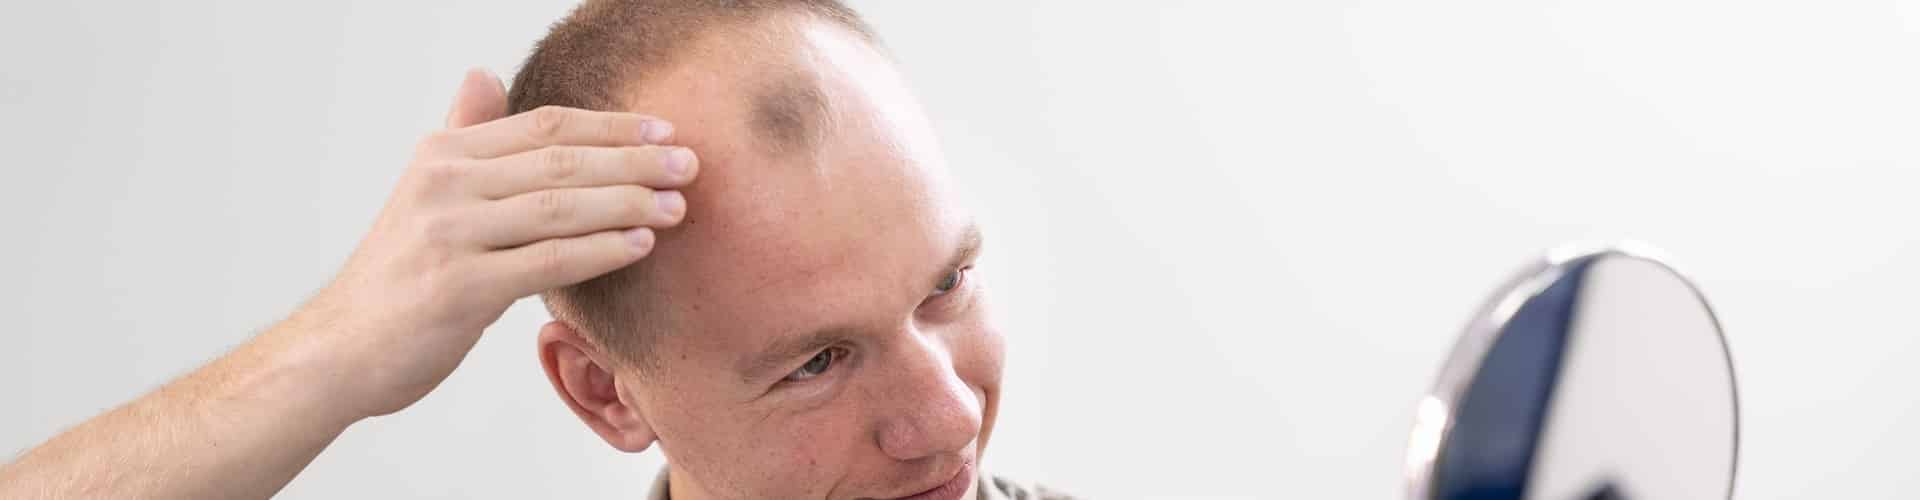 Entenda o que é alopecia androgenetica e saiba como tratar